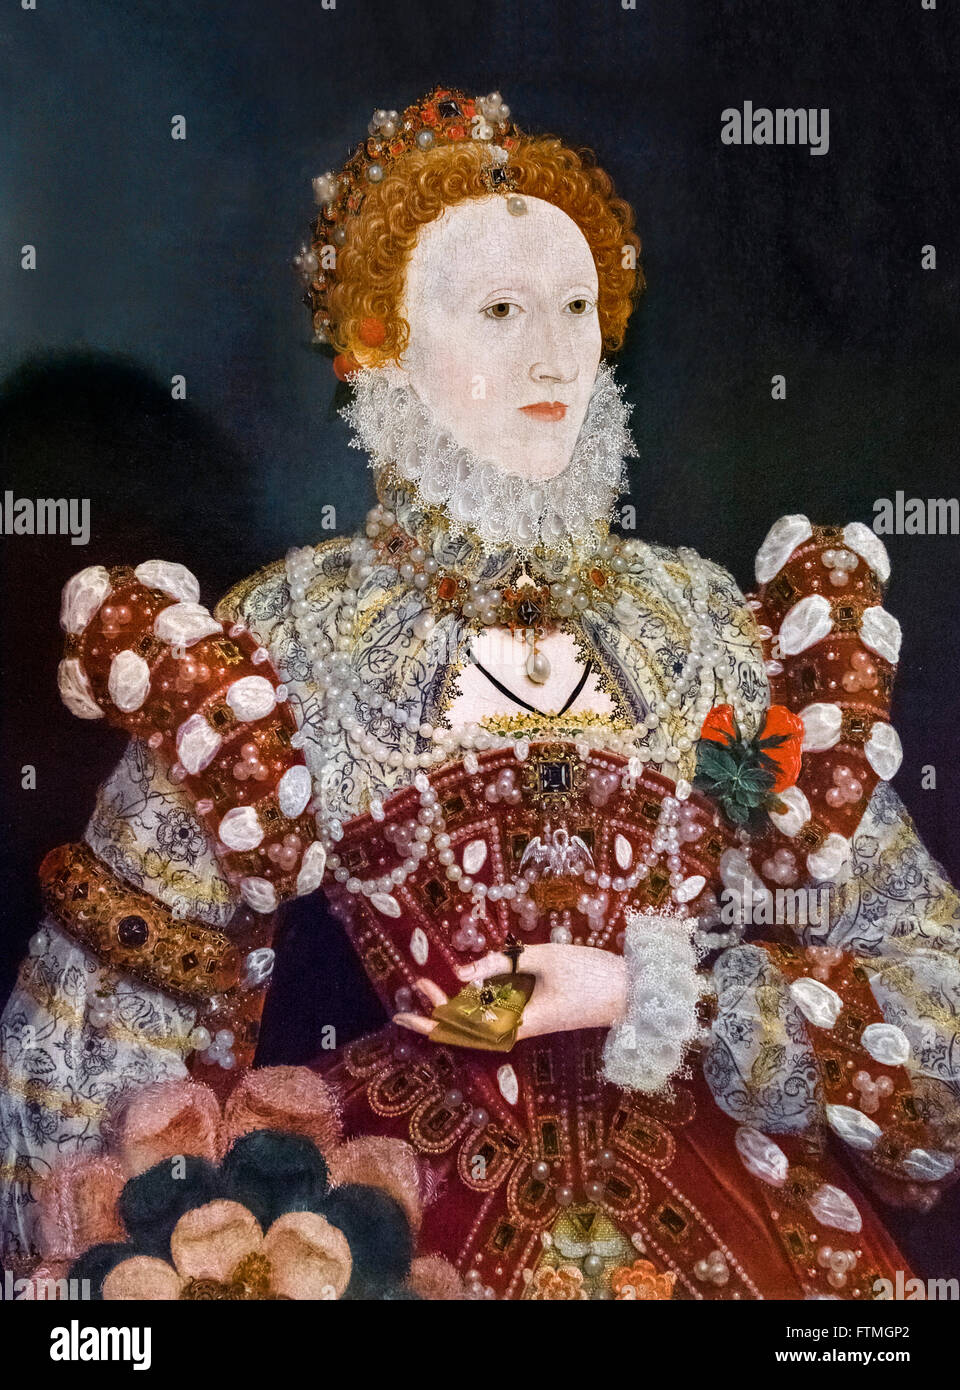 Elizabeth I. Portrait von Königin Elizabeth I von Nicholas Hilliard c 1573. Stockfoto